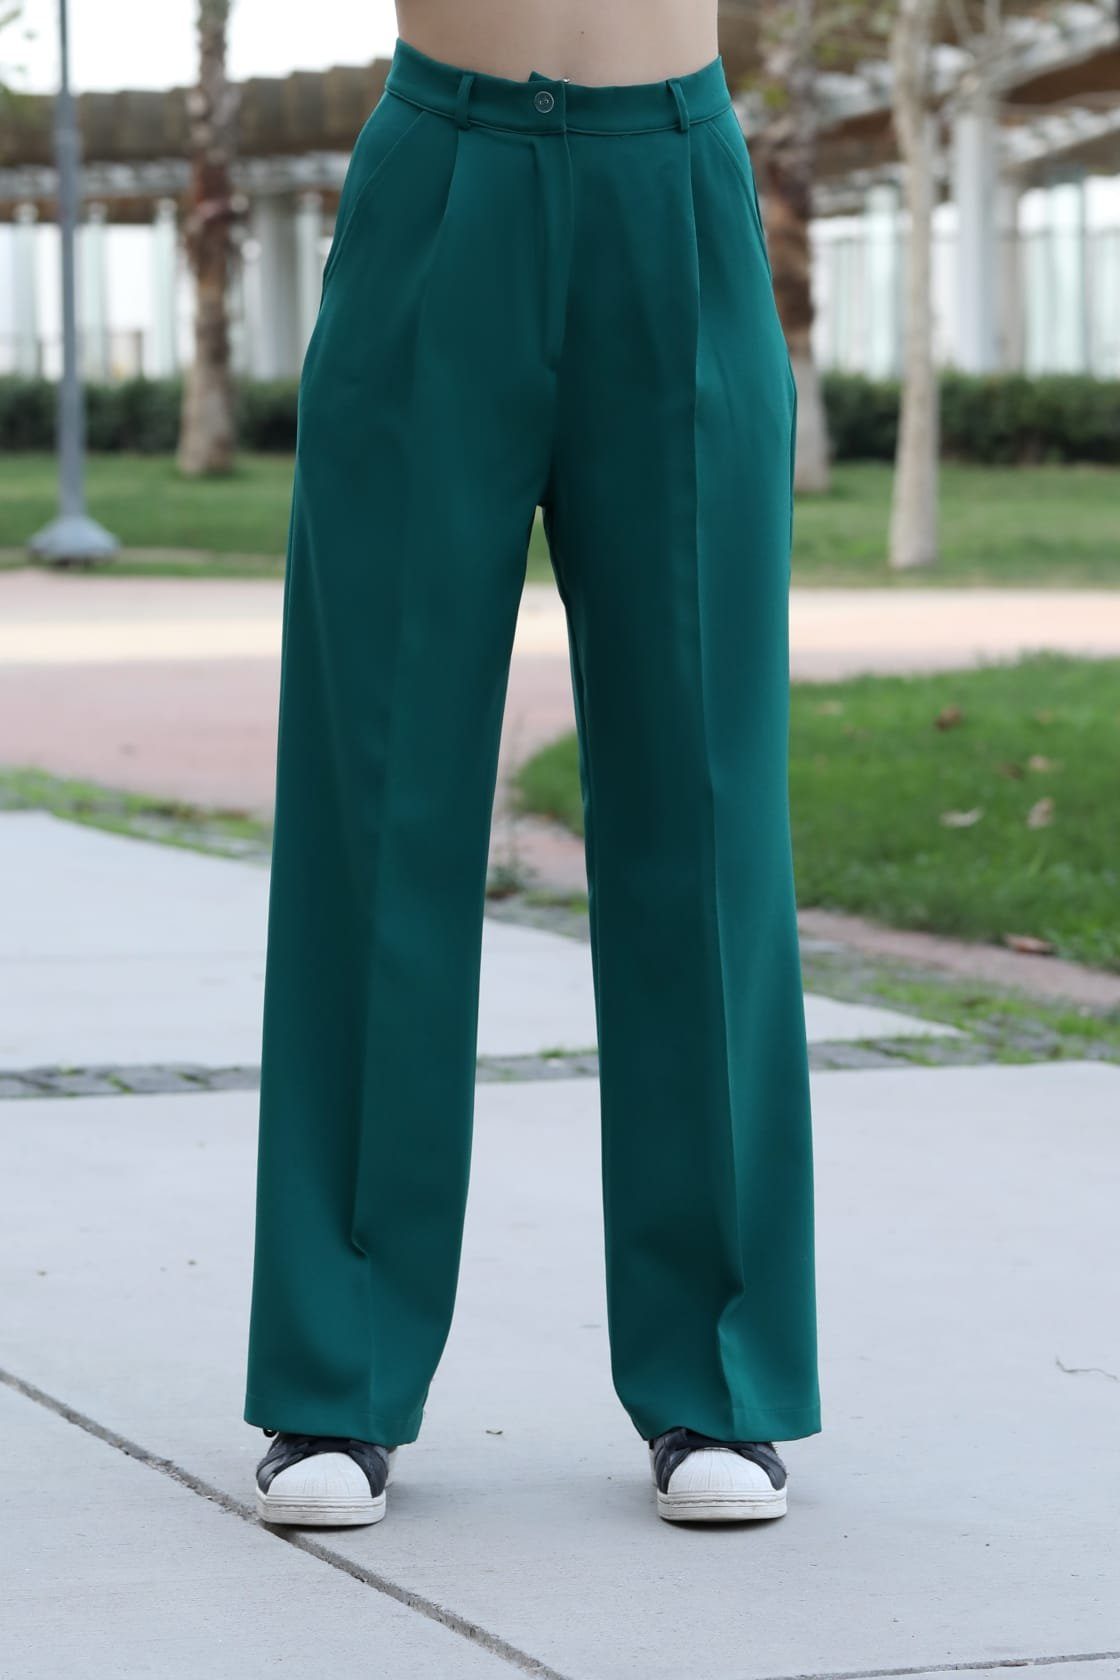 Locker Palazzohose Smaragd-Grün Farben Hose Hose 10 Lässig Damen sportlich elegant Modavitrini Hohe Weite Taille, lange